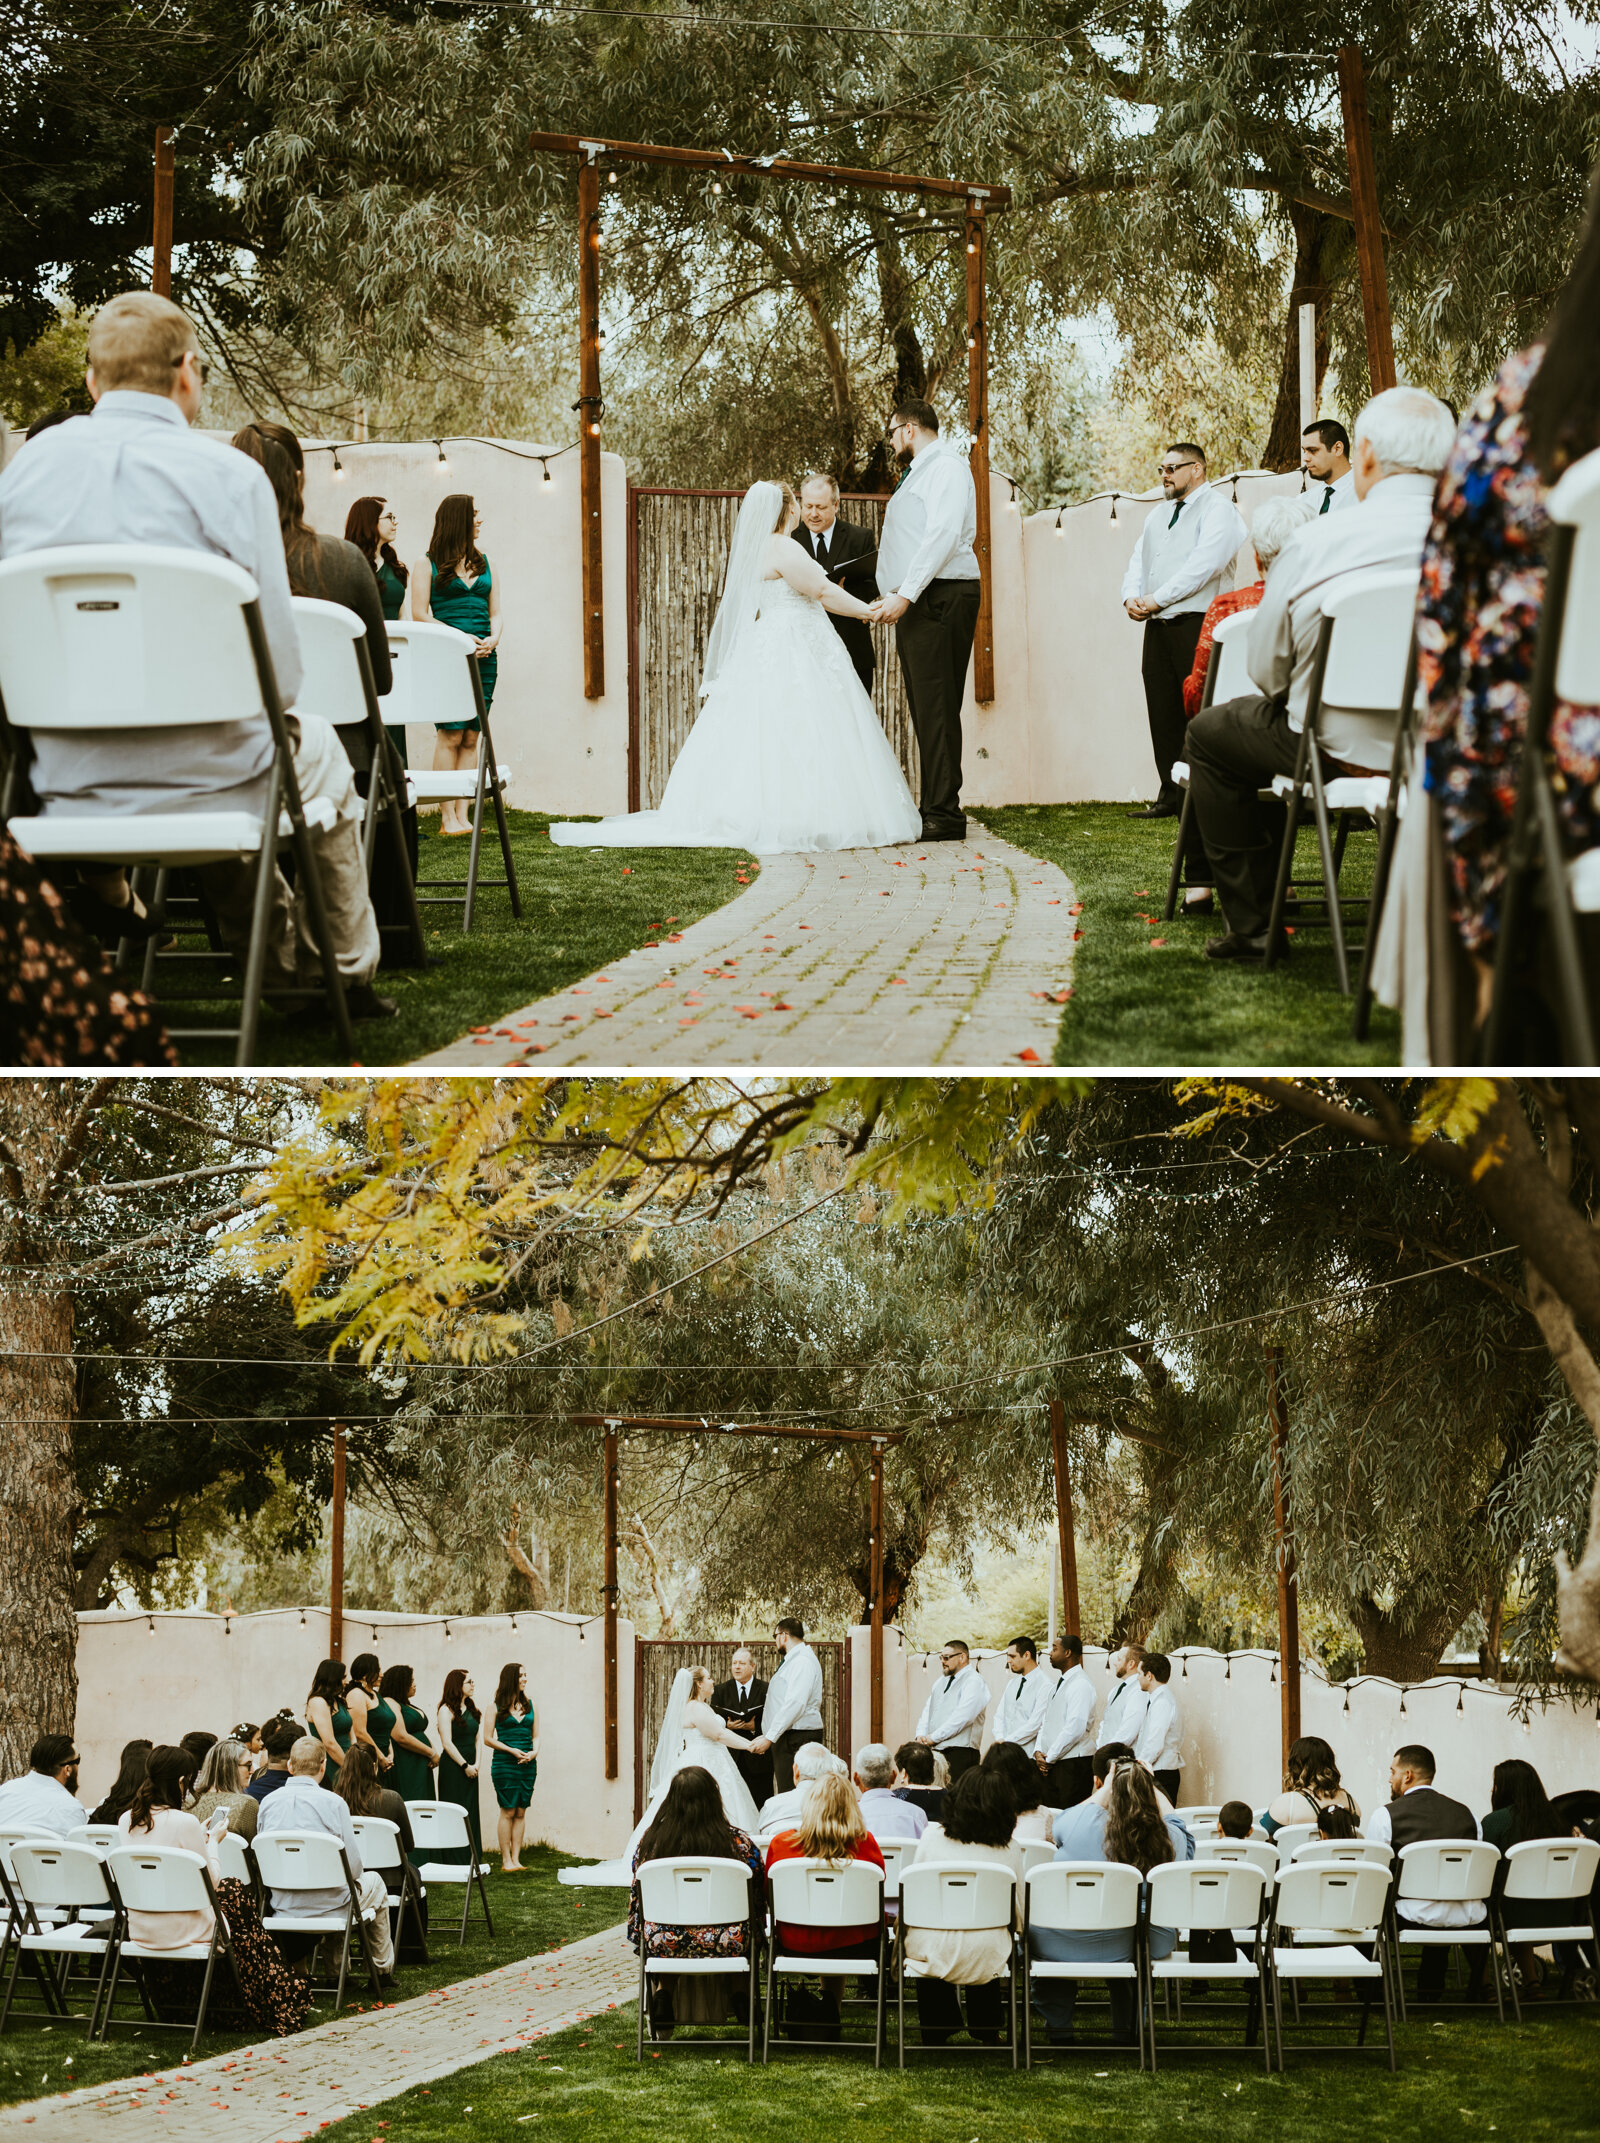 hacienda de rosa mesa arizona wedding photos bride and groom pictures wedding ceremony inspo.jpg